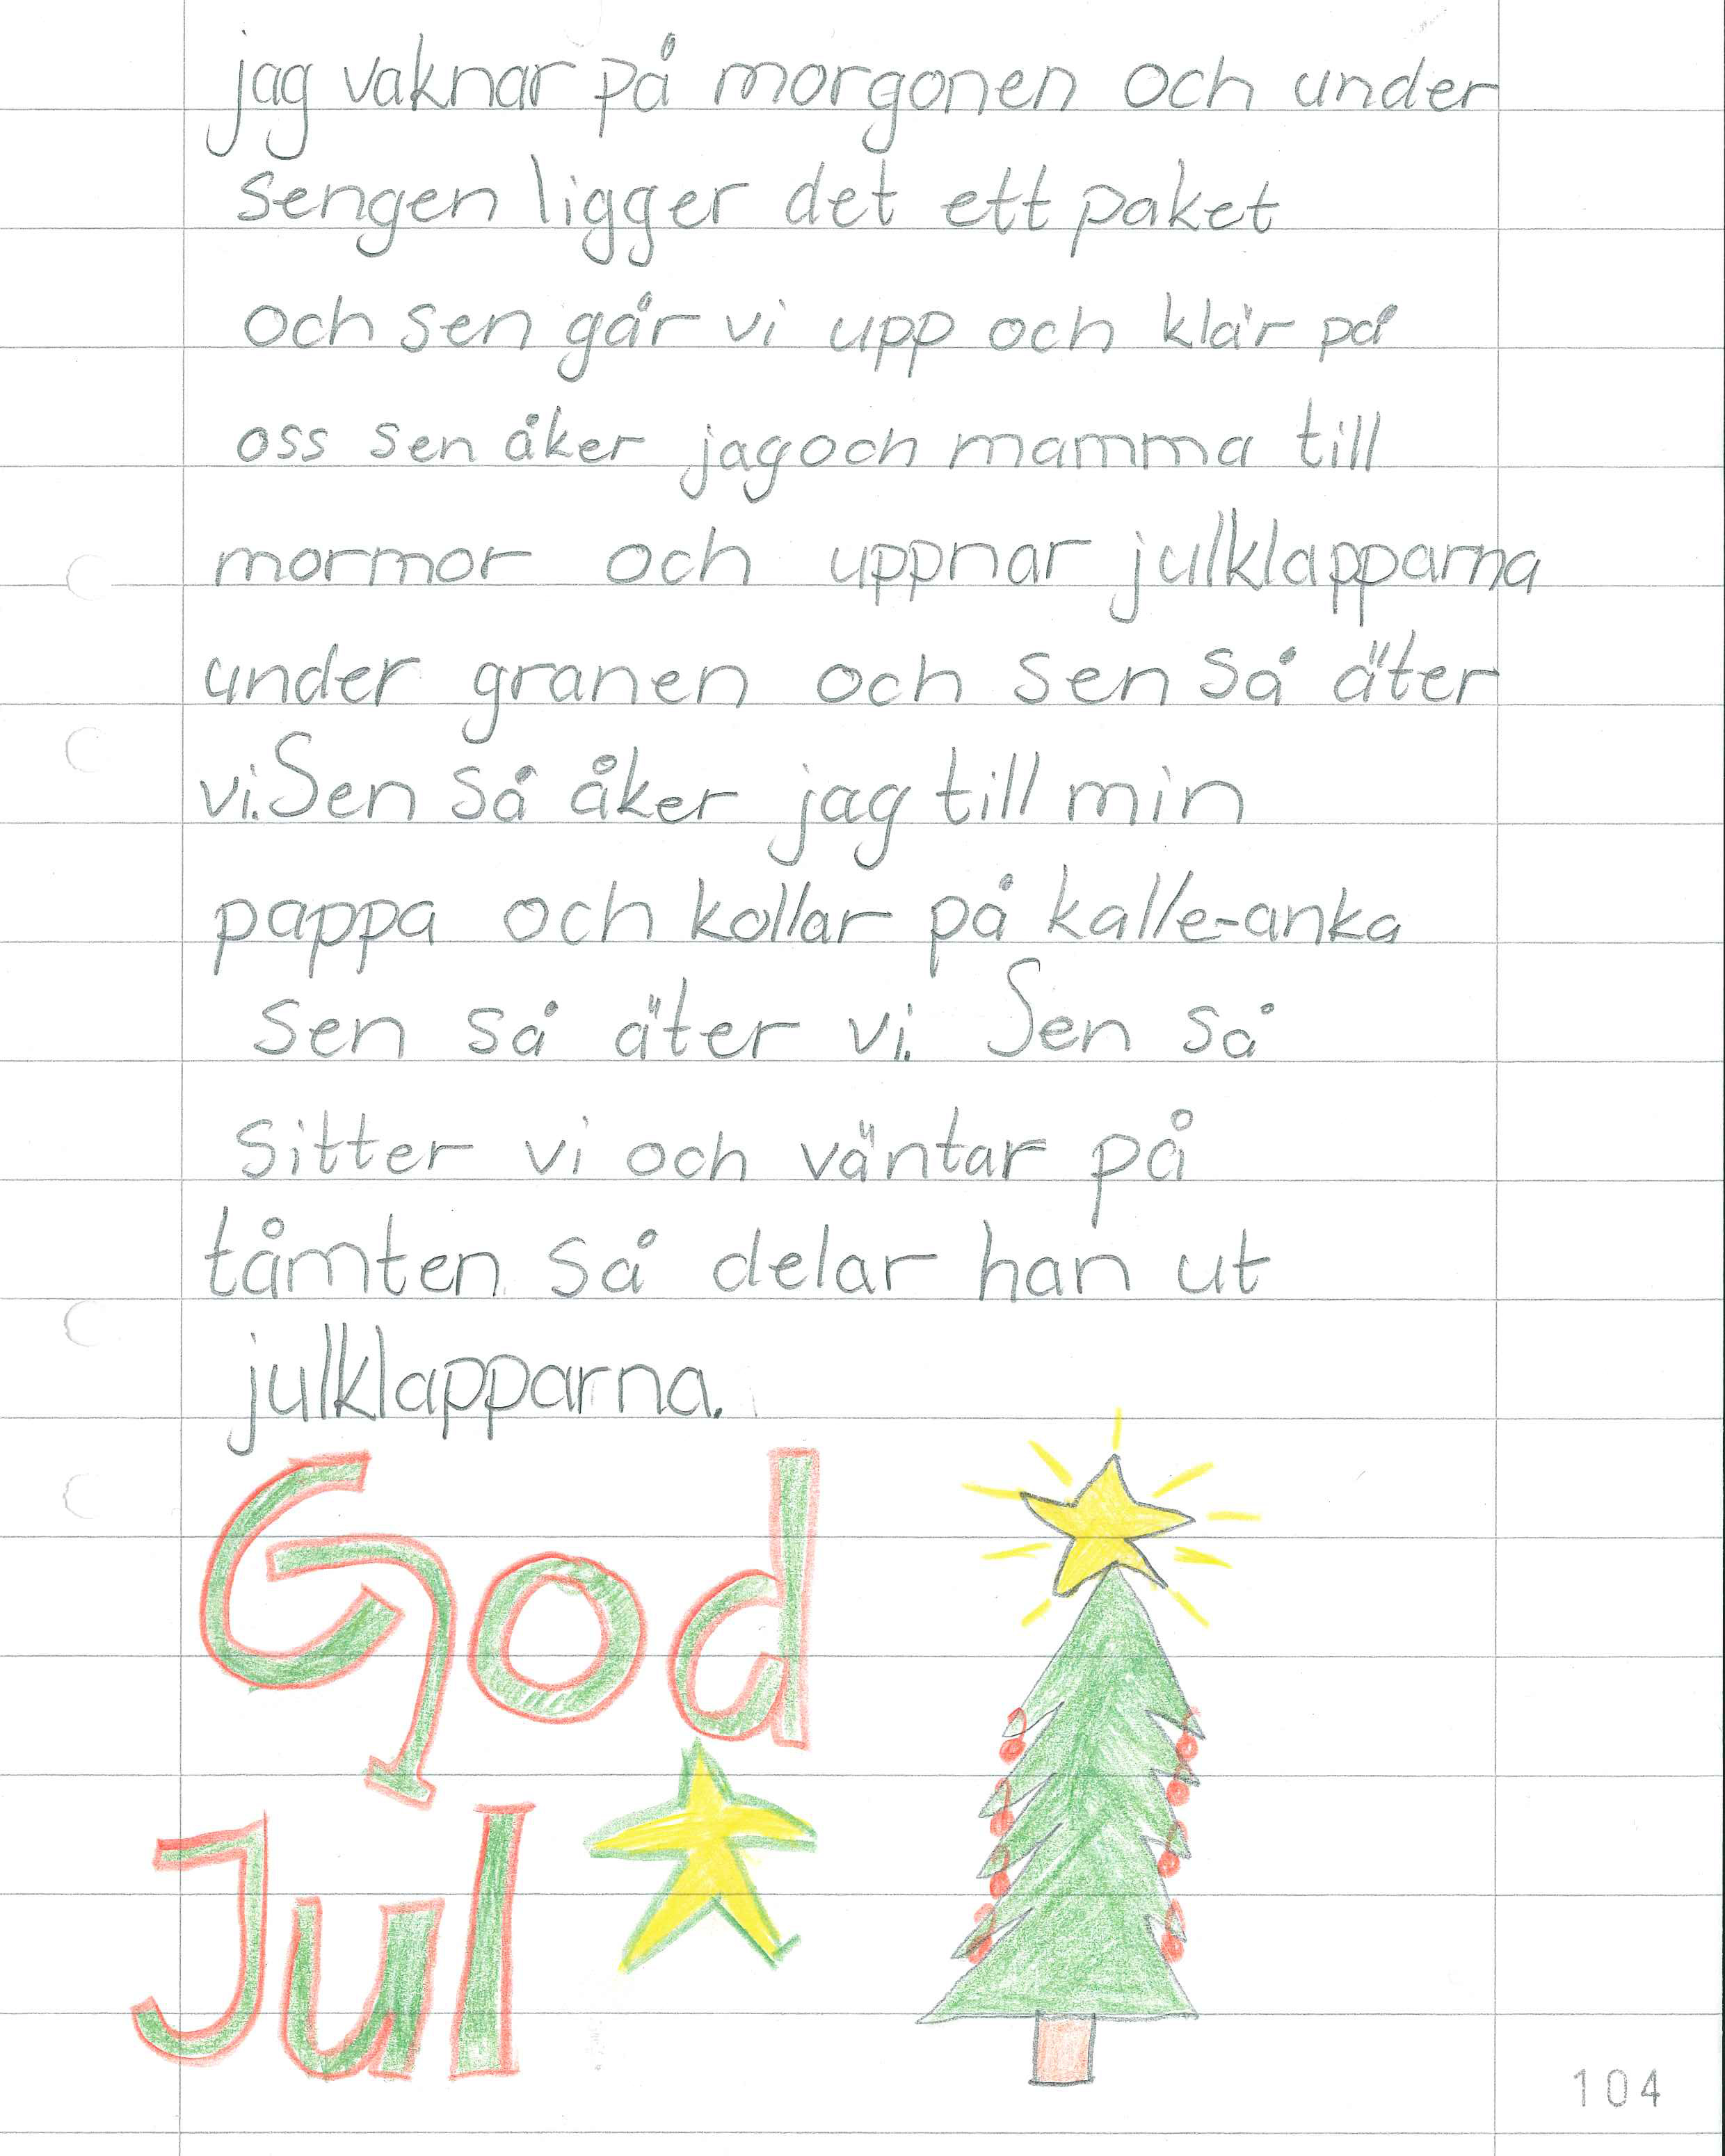 handskrivet A4-papper som avslutas med "God jul" och en teckning av en julgran.